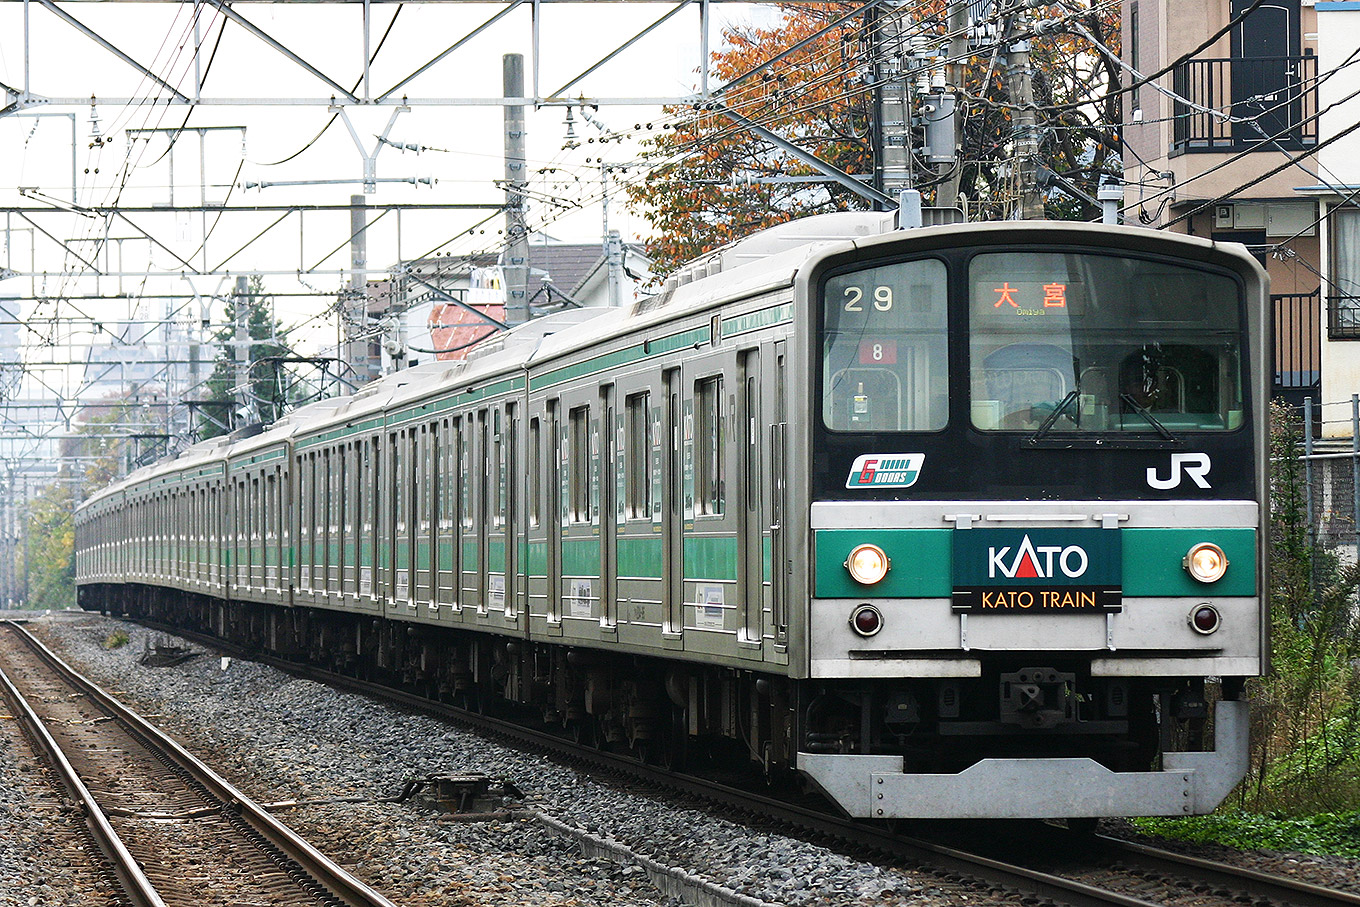 205系 KATO TRAIN 埼京線 | 路面電車と鉄道の写真館